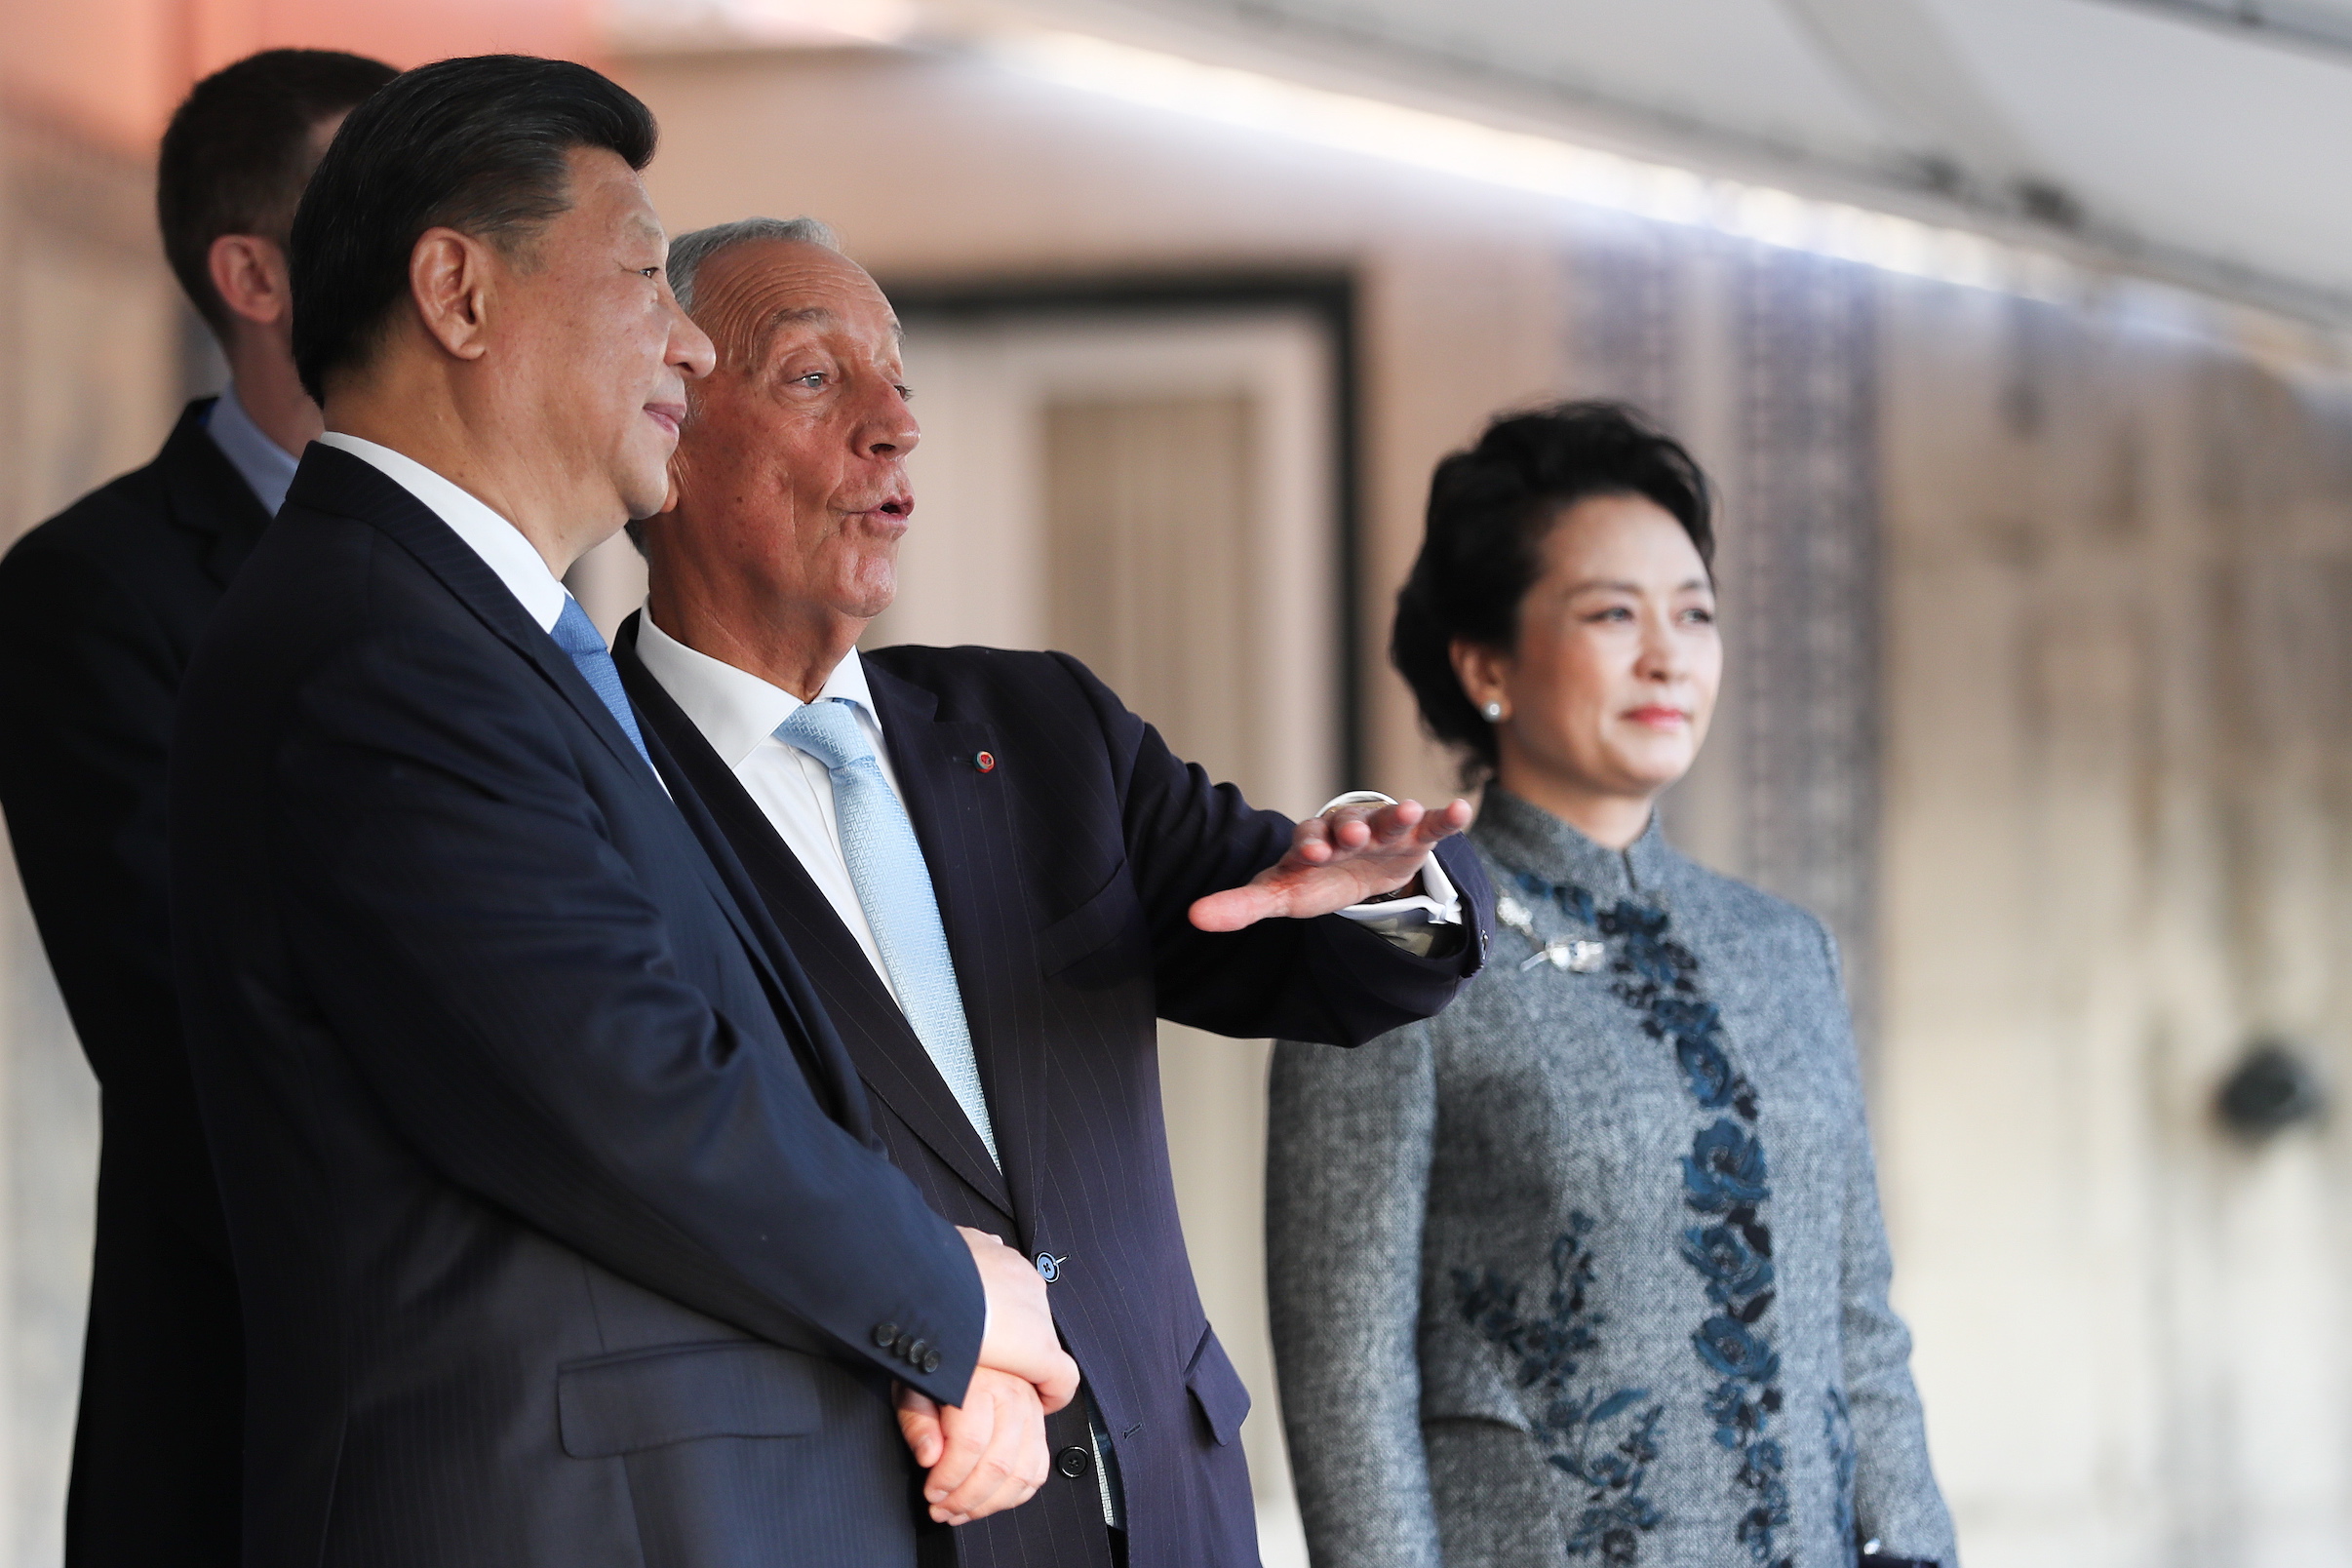 Direitos humanos | PR português disse “aquilo que devia ser dito” a Xi Jinping